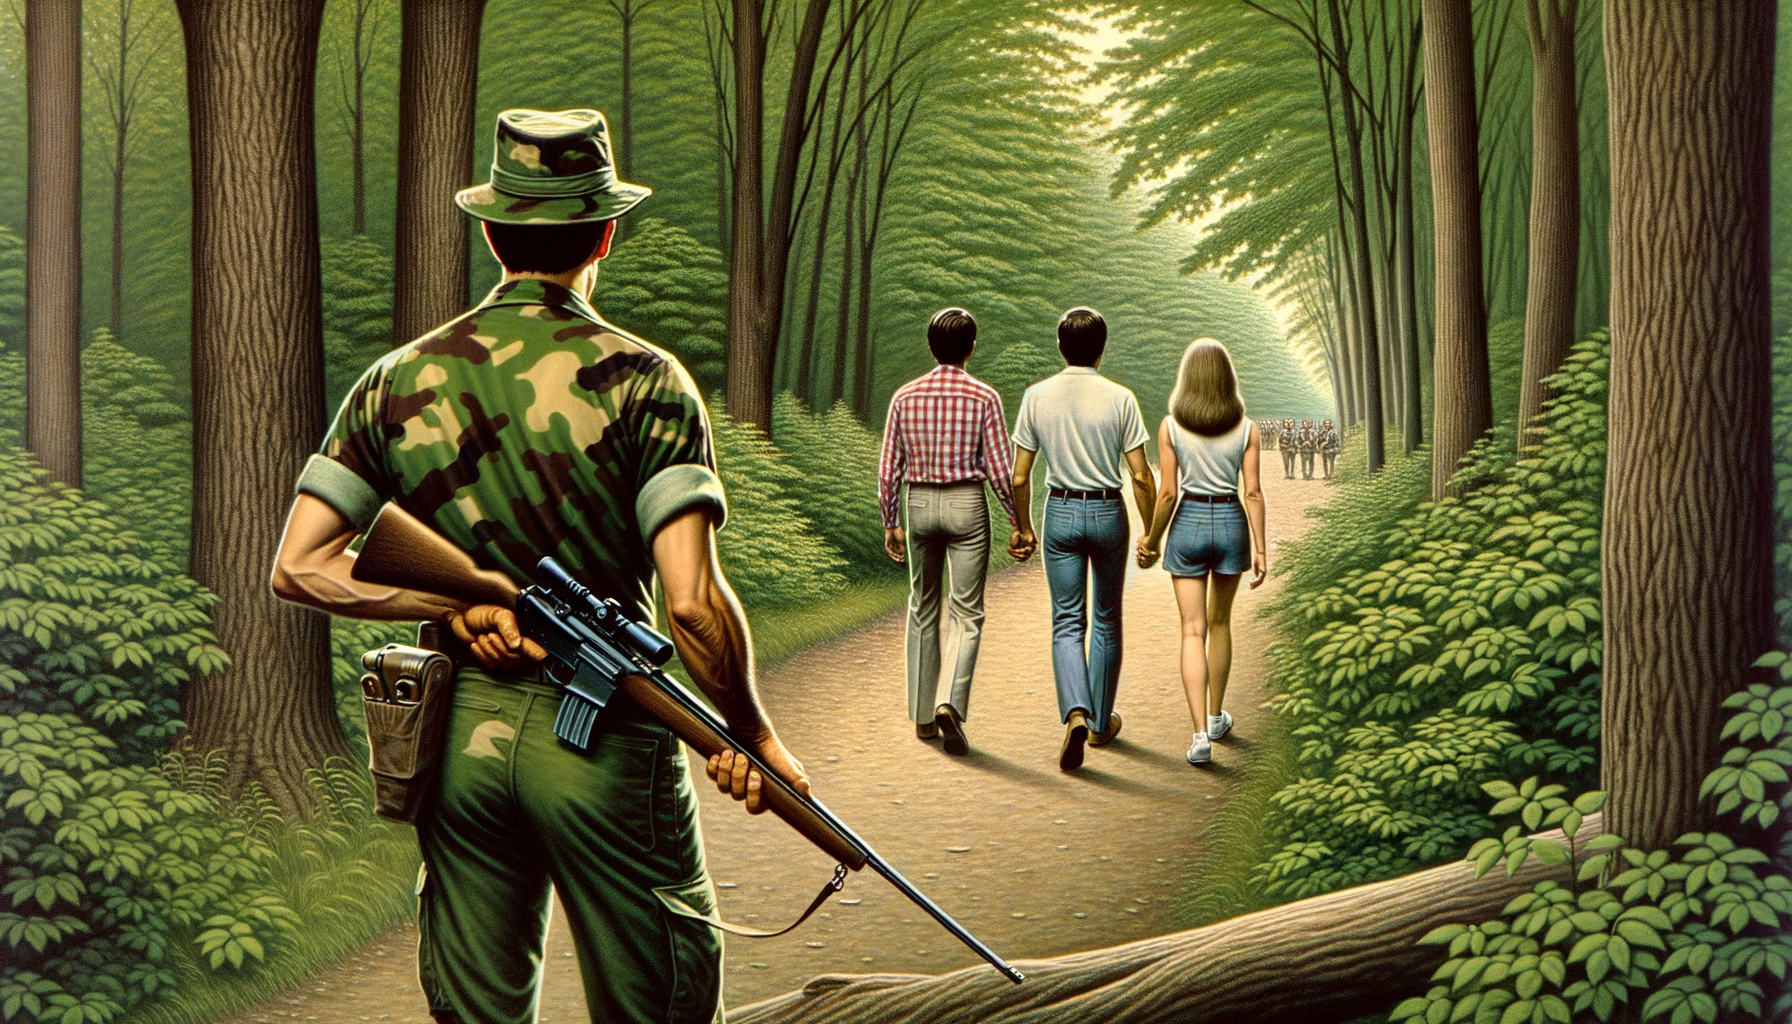 1976 год Заповедник Мак-Клинток, пара мужчина и женщина гуляют по тропинки в лесу, спиной к нам стоит американский гражданский мужчина с ружьем и наблюдает за ними